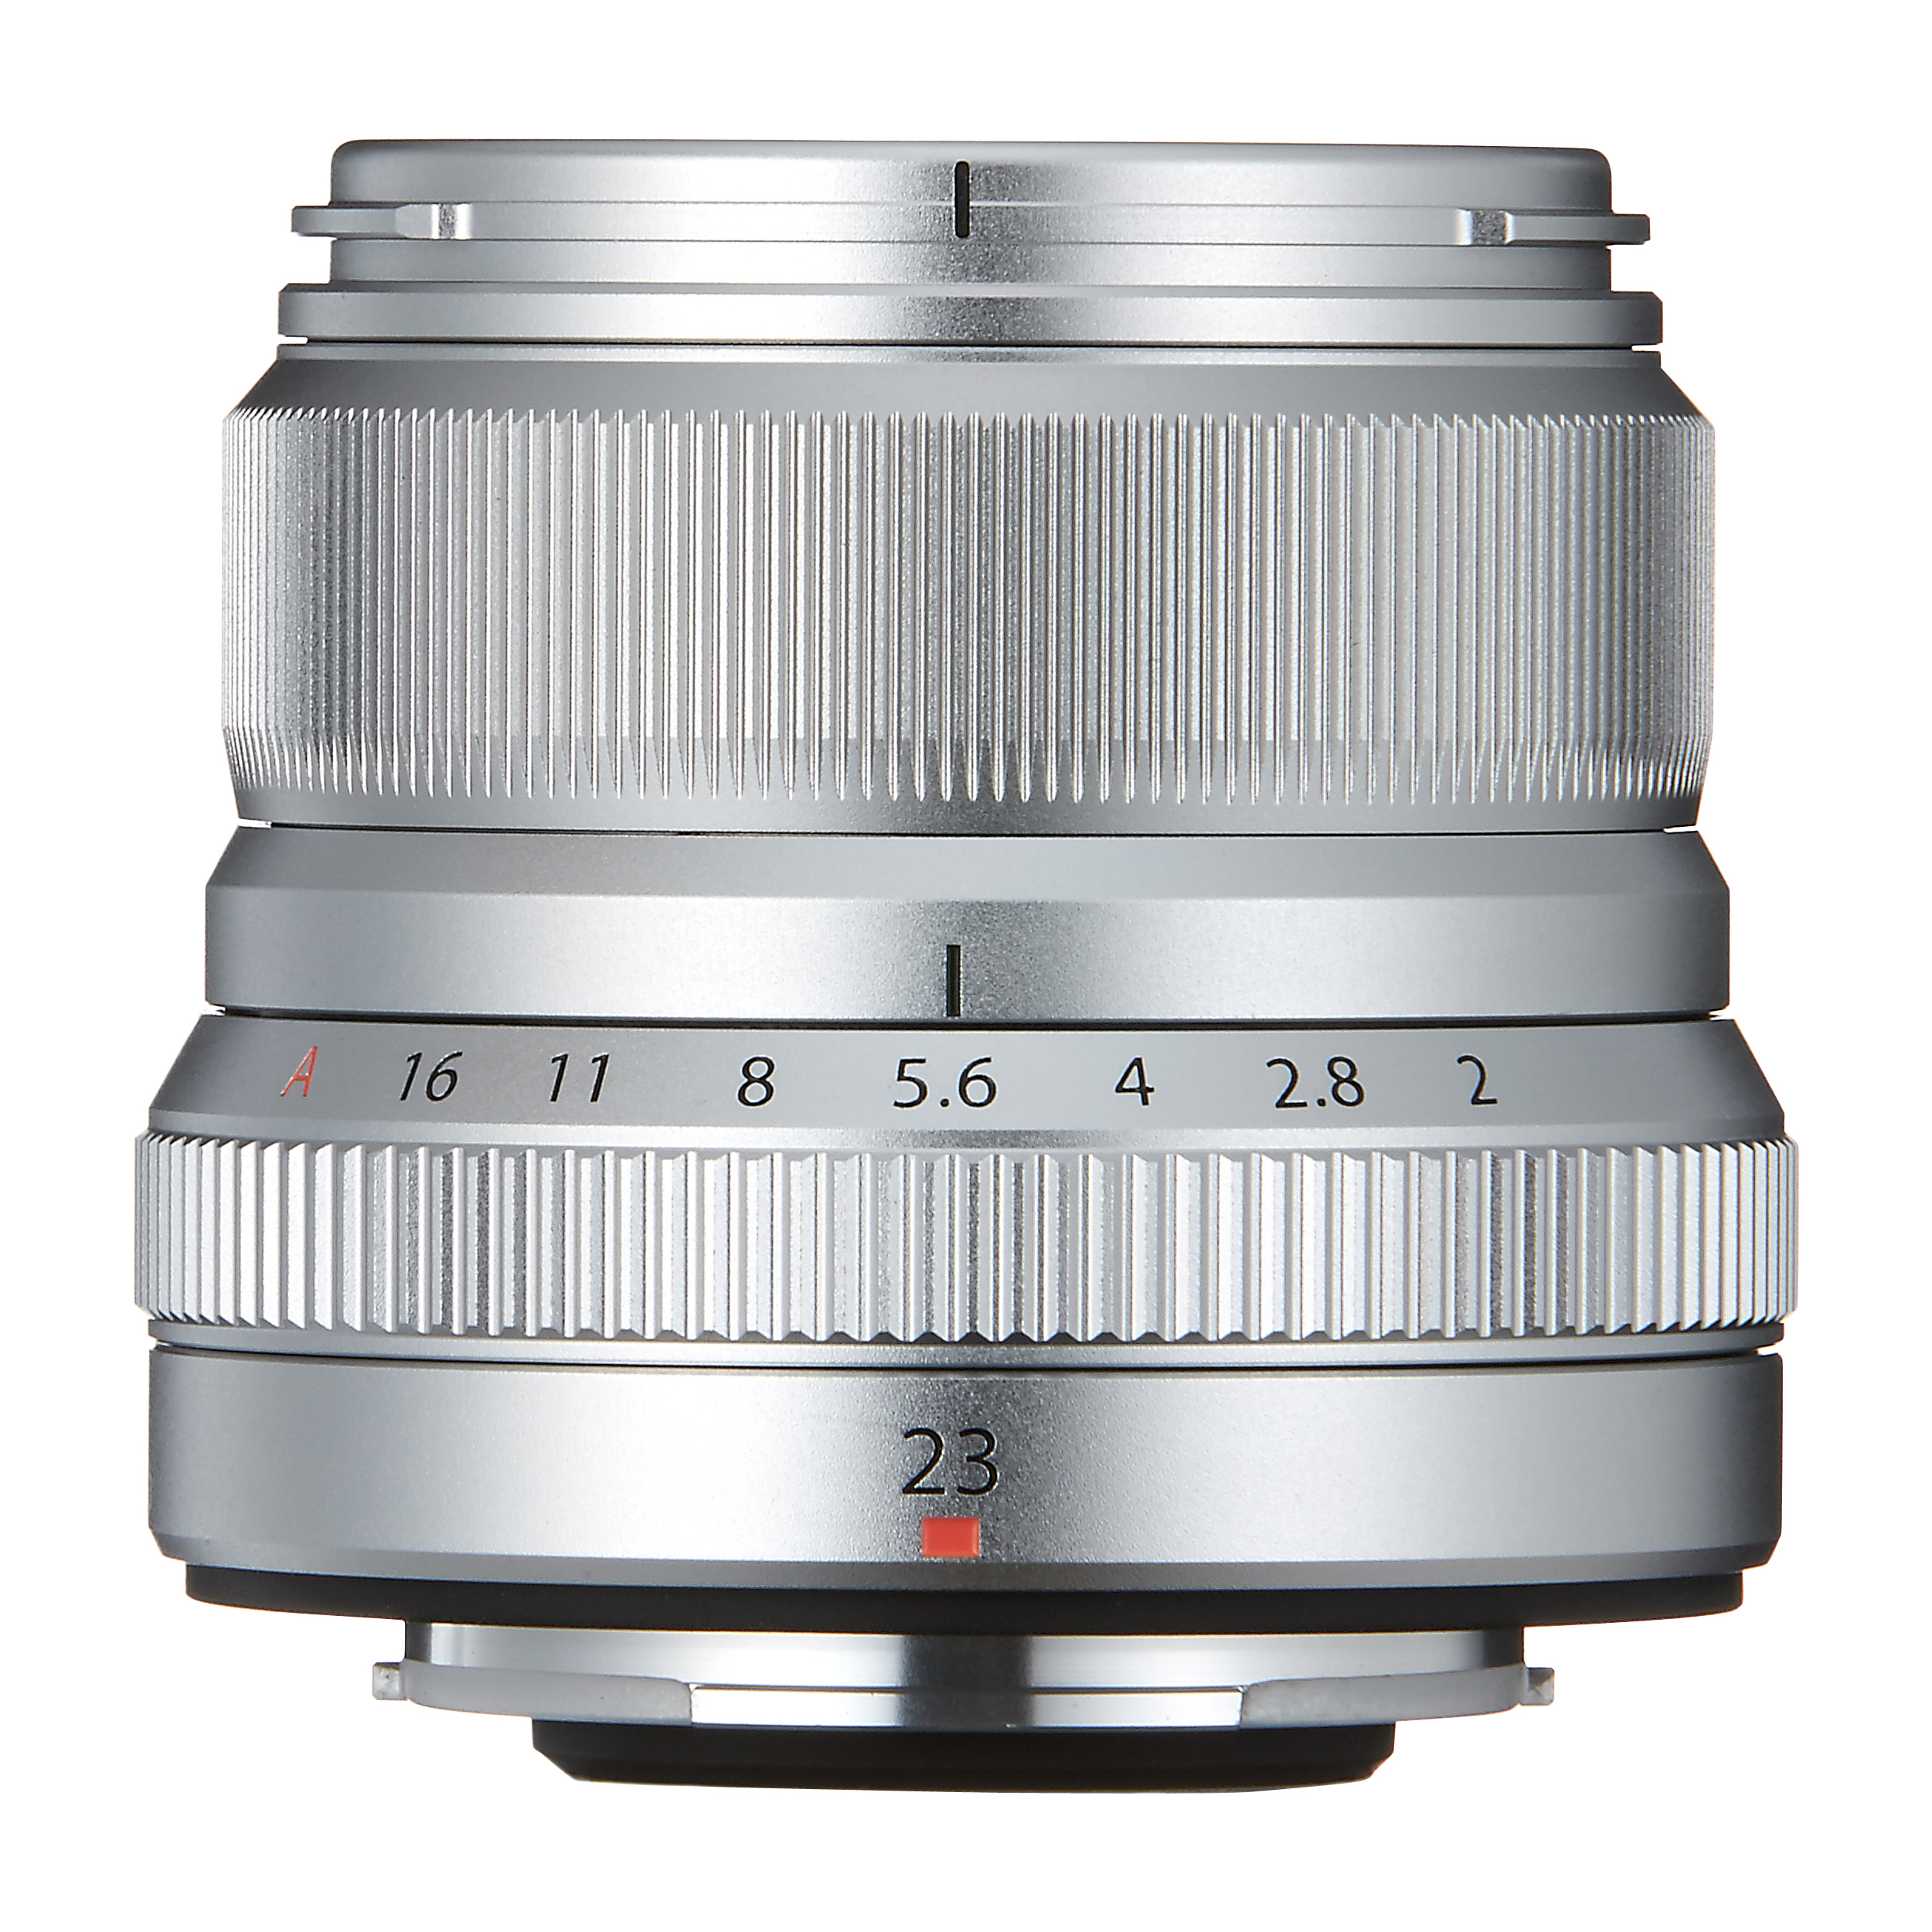 XF23mmF2 R WR Lens, Silver